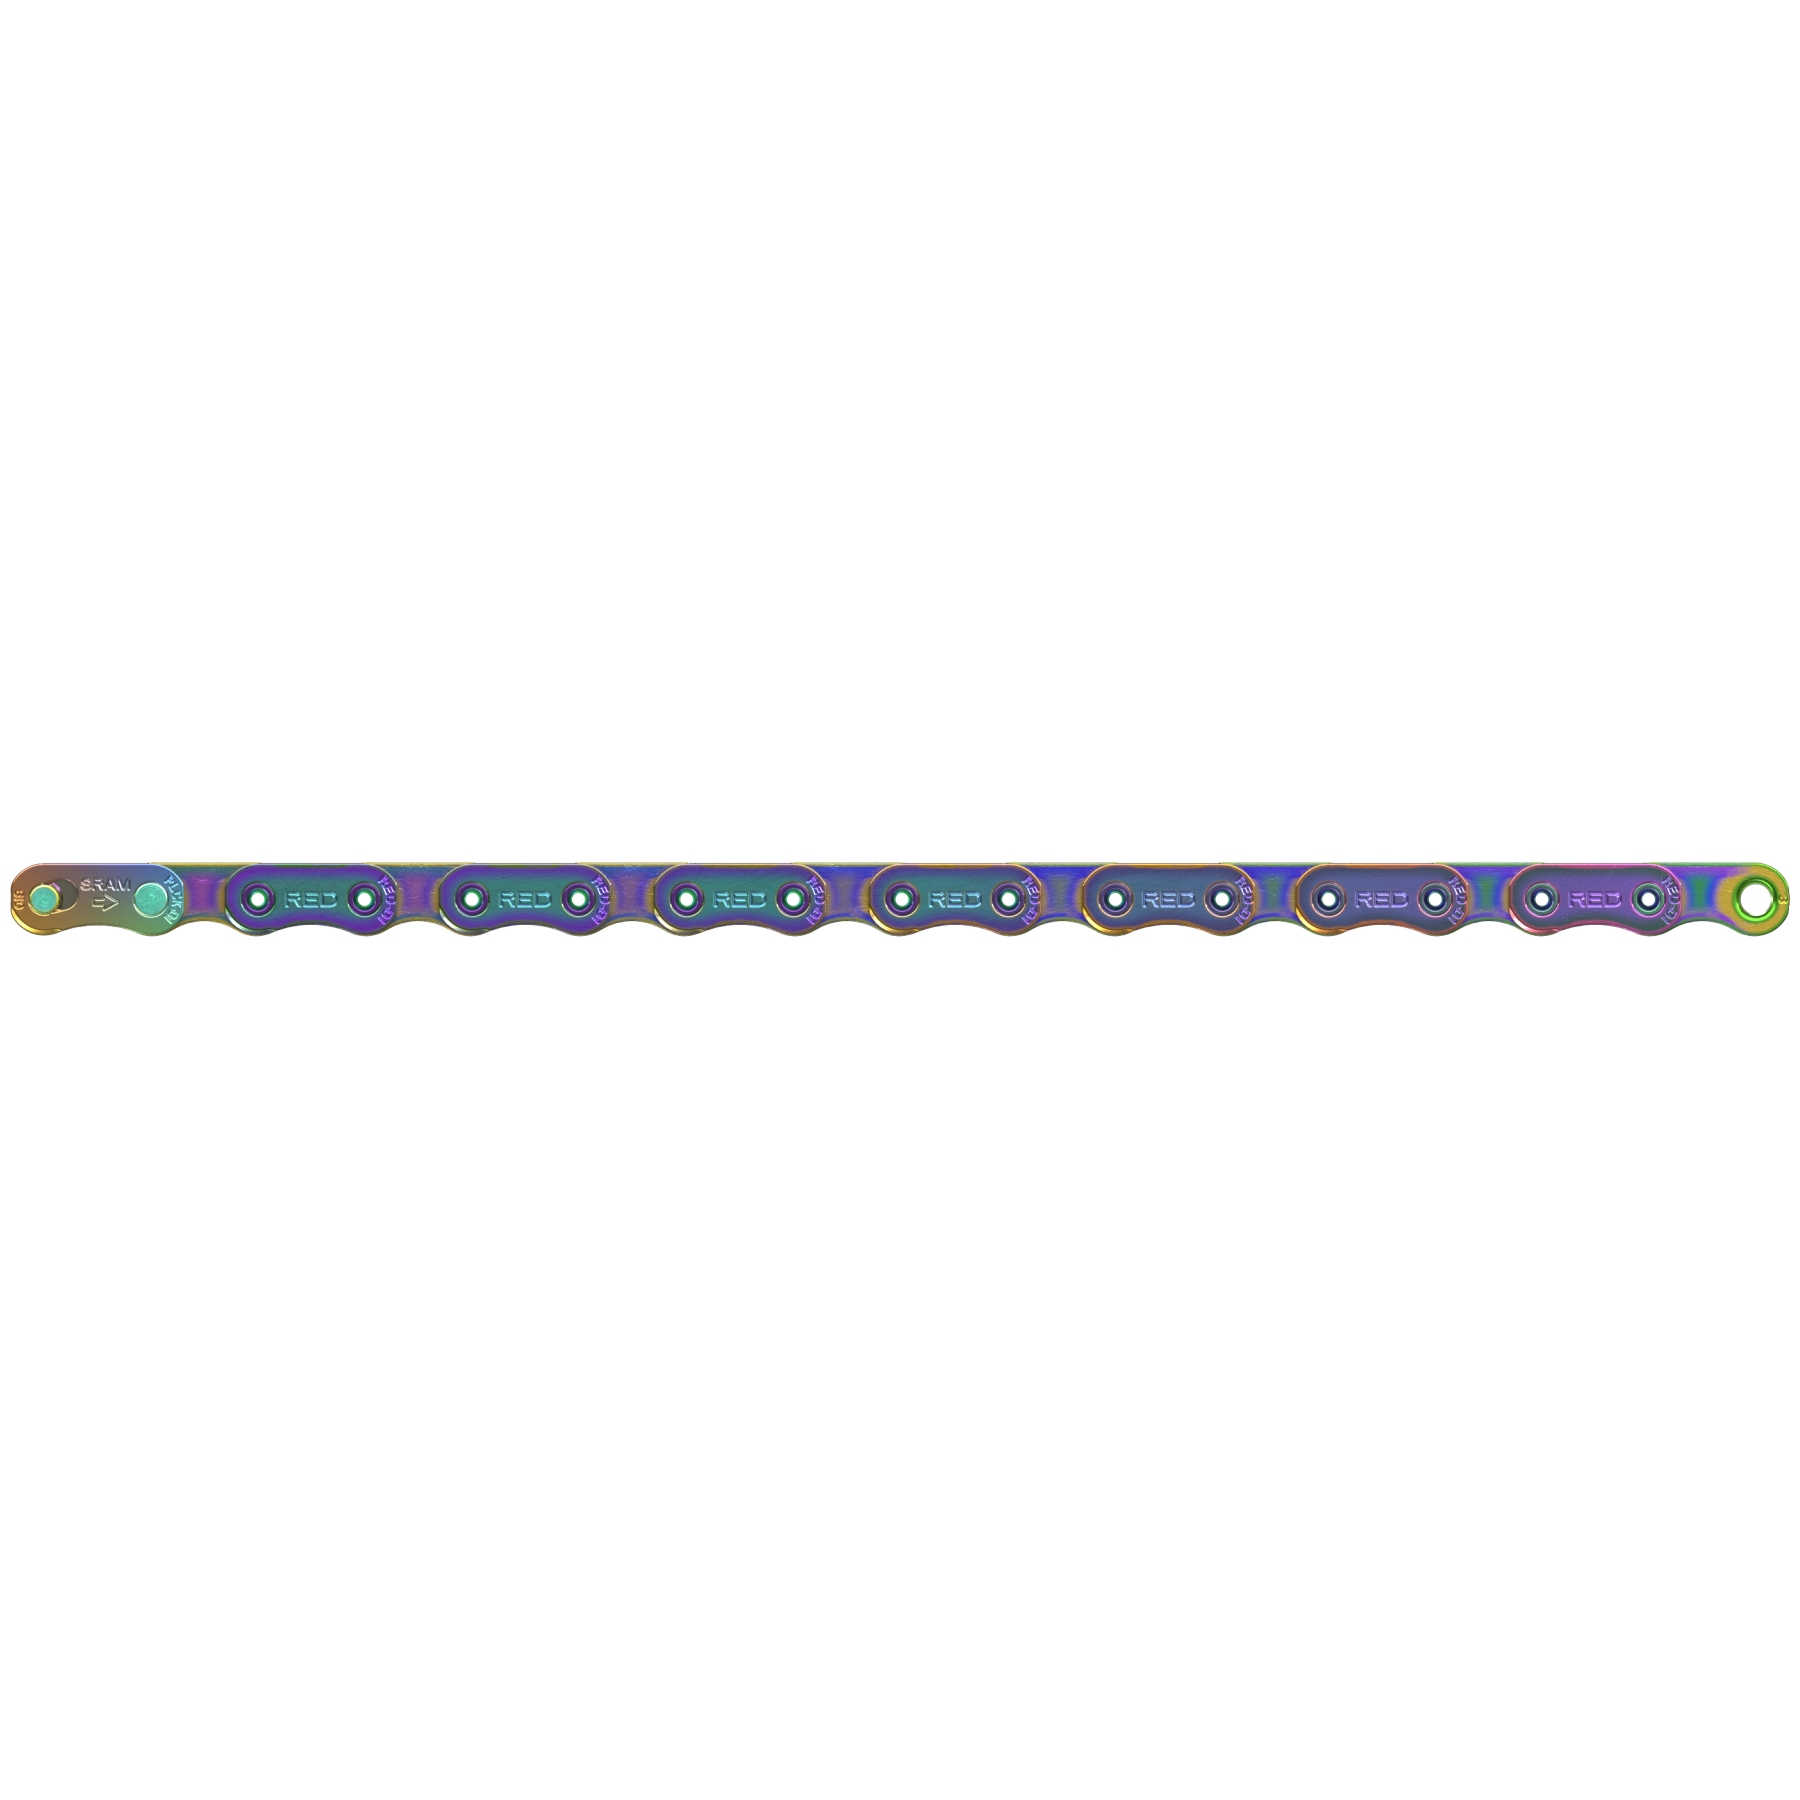 Produktbild von SRAM RED Kette - Flattop | 12-fach - 120 Glieder - rainbow